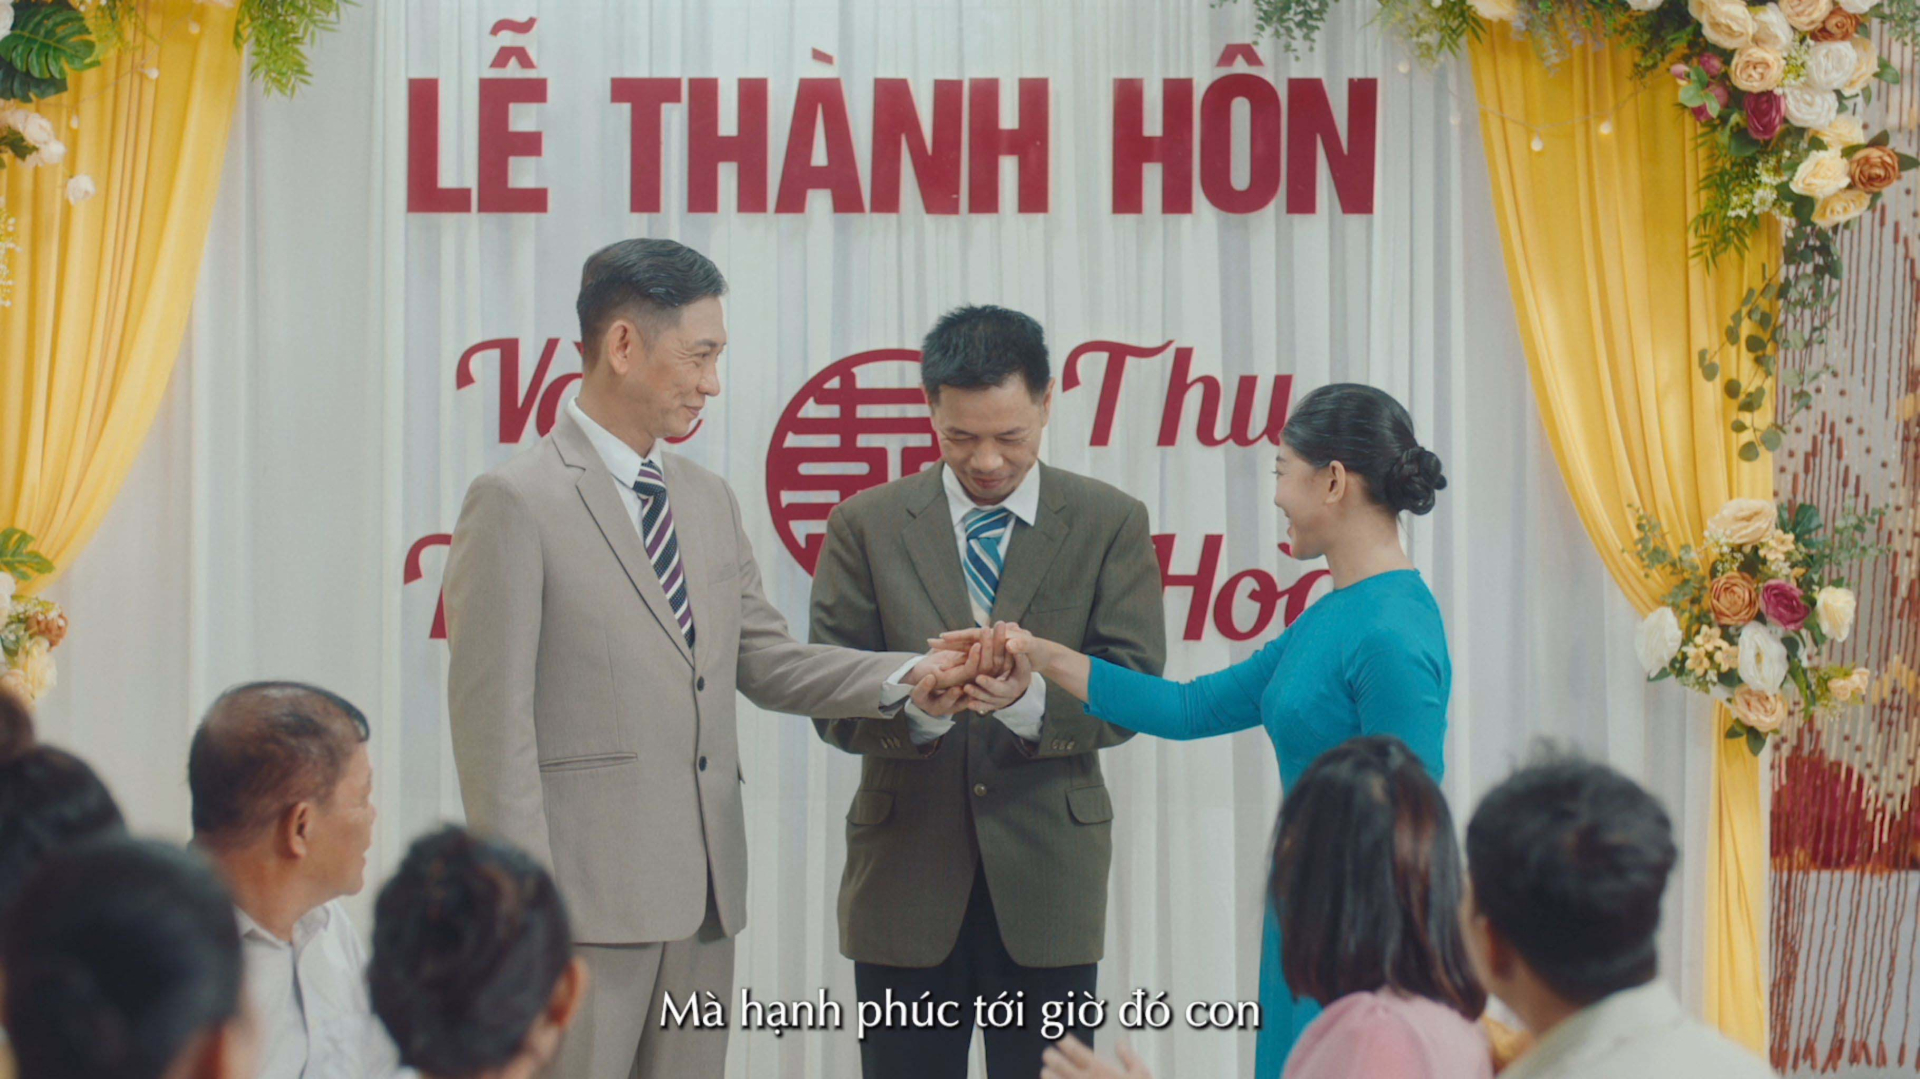 “Đạo diễn trăm tỉ” Võ Thanh Hòa hé lộ về phim ngắn triệu view “Khi nào mình cưới?” - ảnh 2